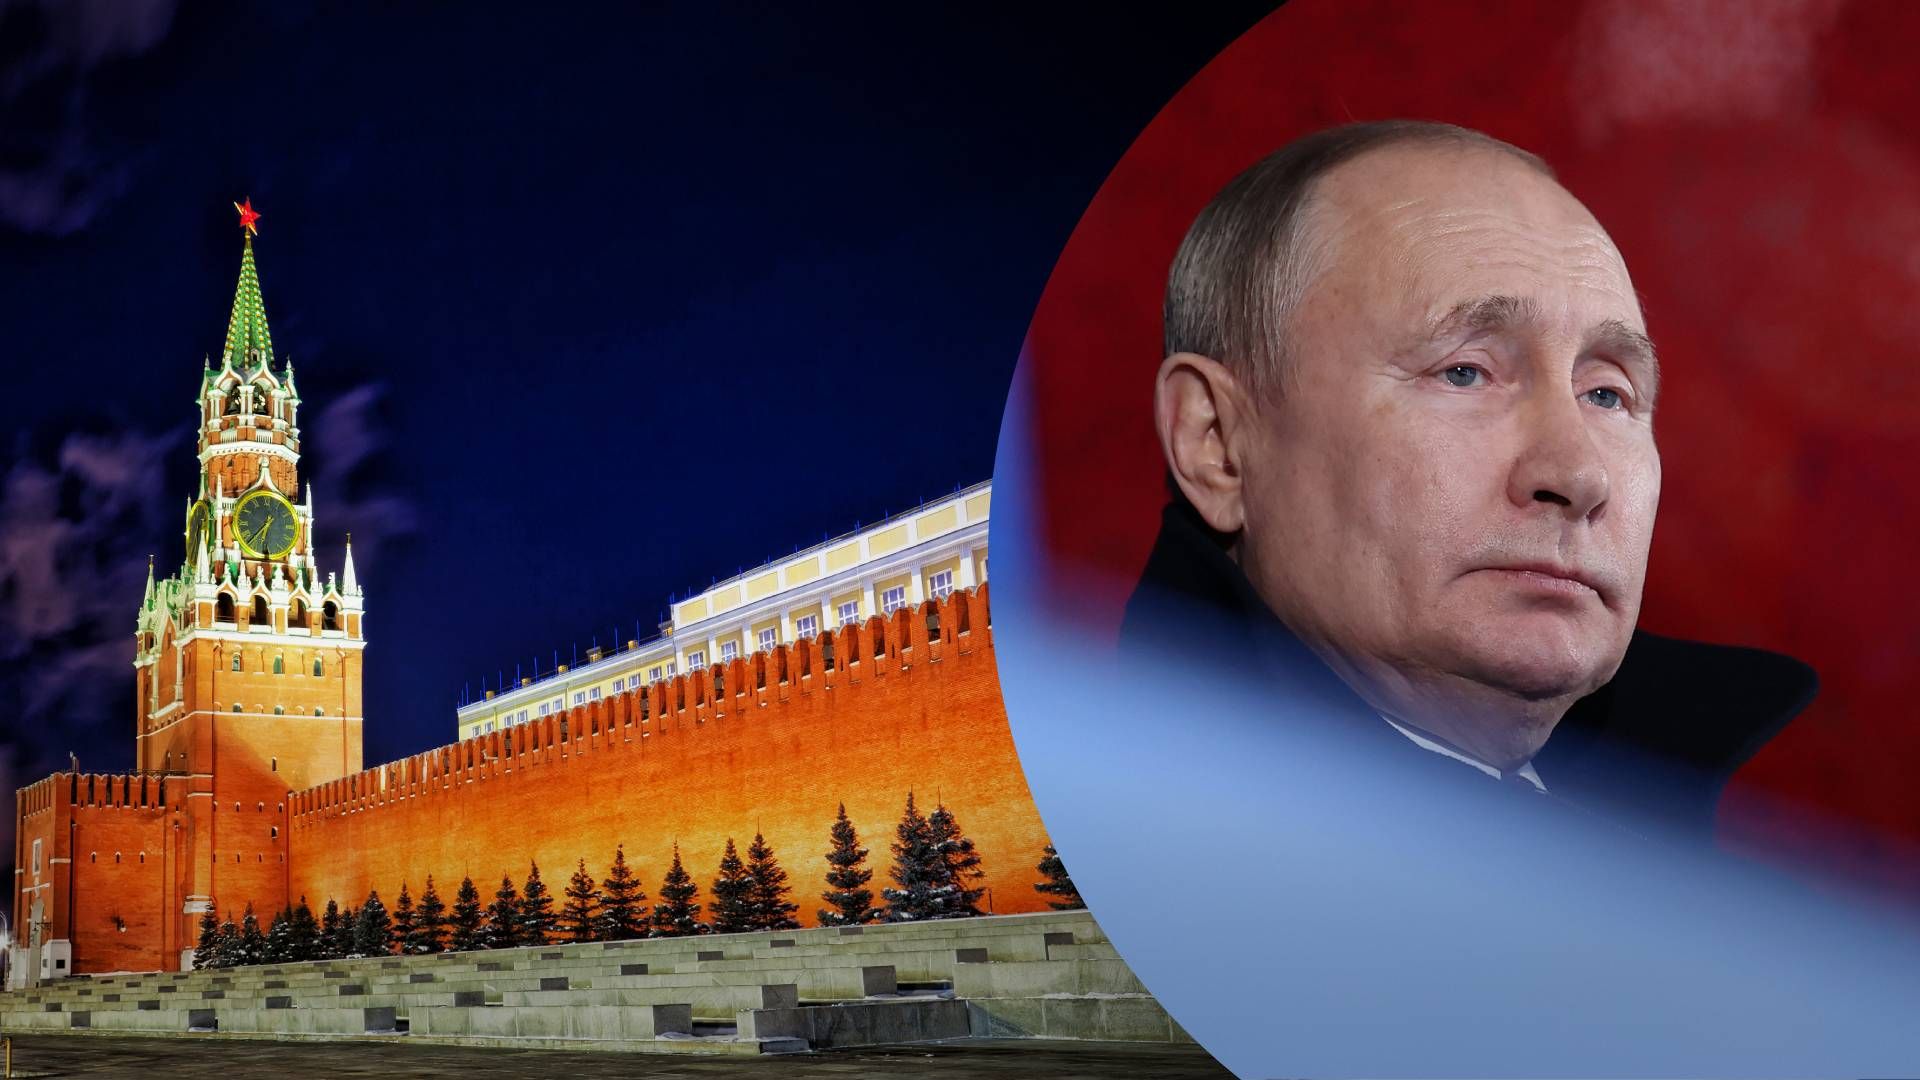 Окружение Путина может искать контакты с Западом – какие сценарии развития событий в России